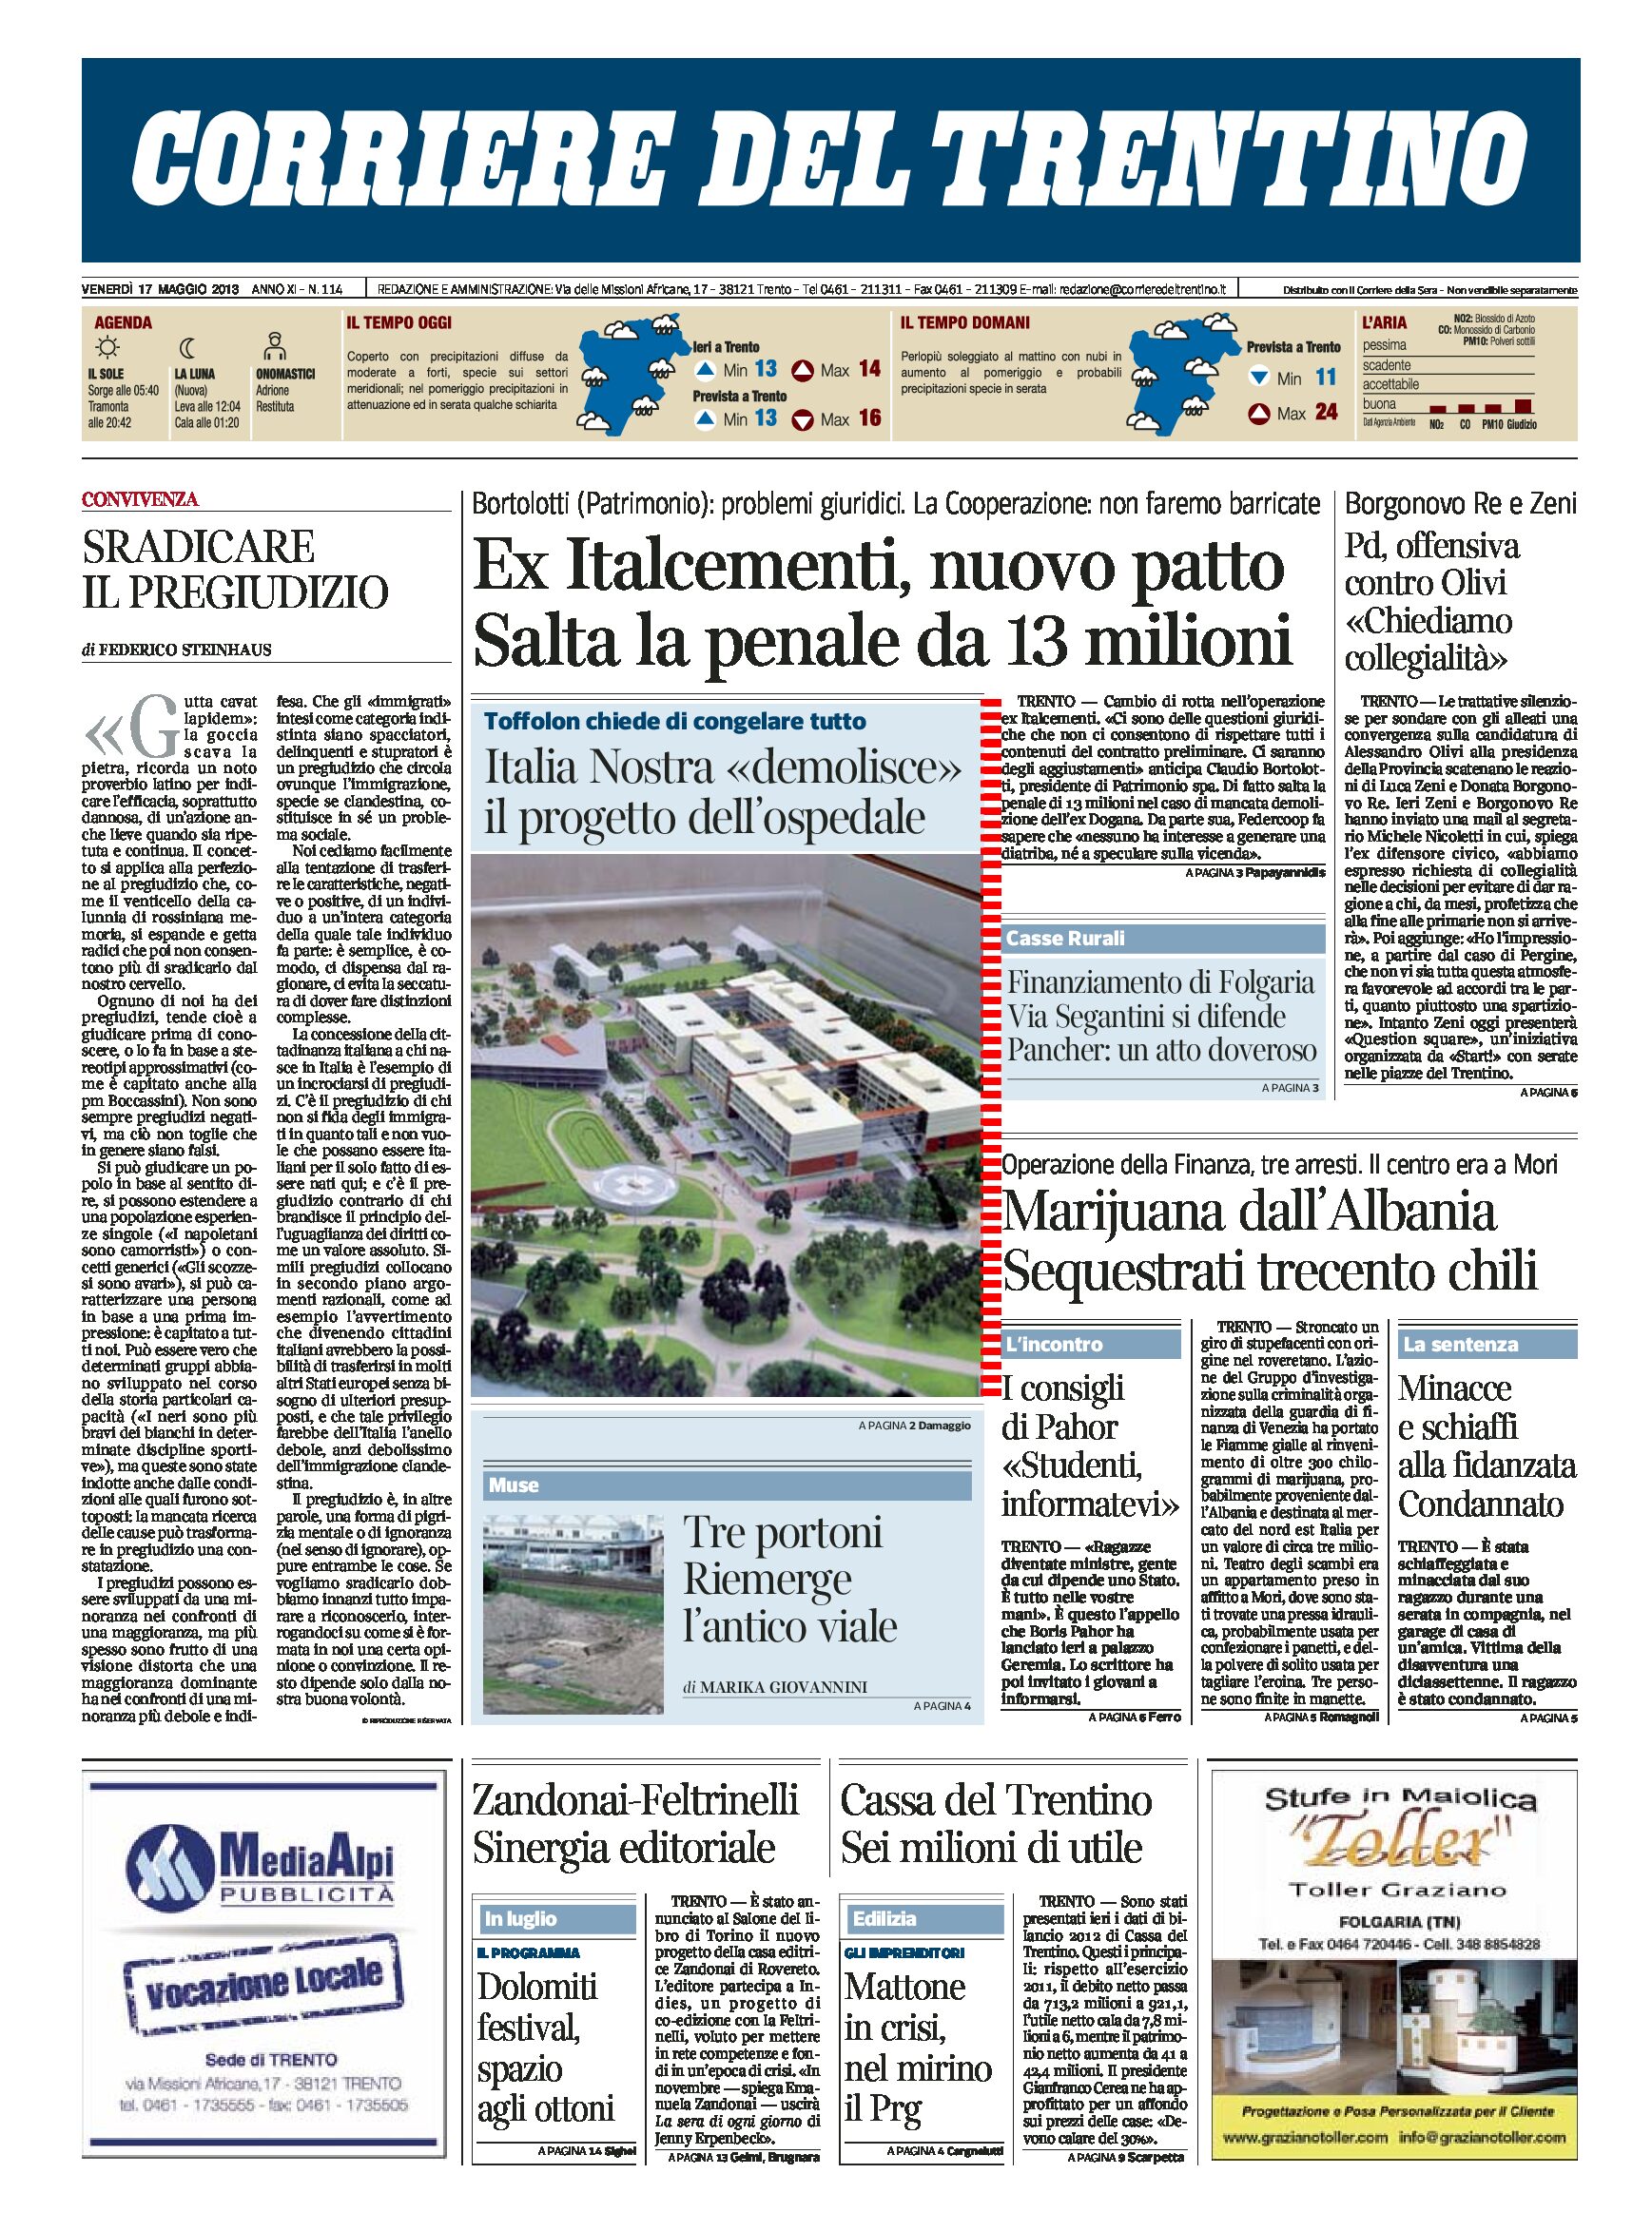 Italia Nostra “demolisce” il progetto del nuovo ospedale di Trento